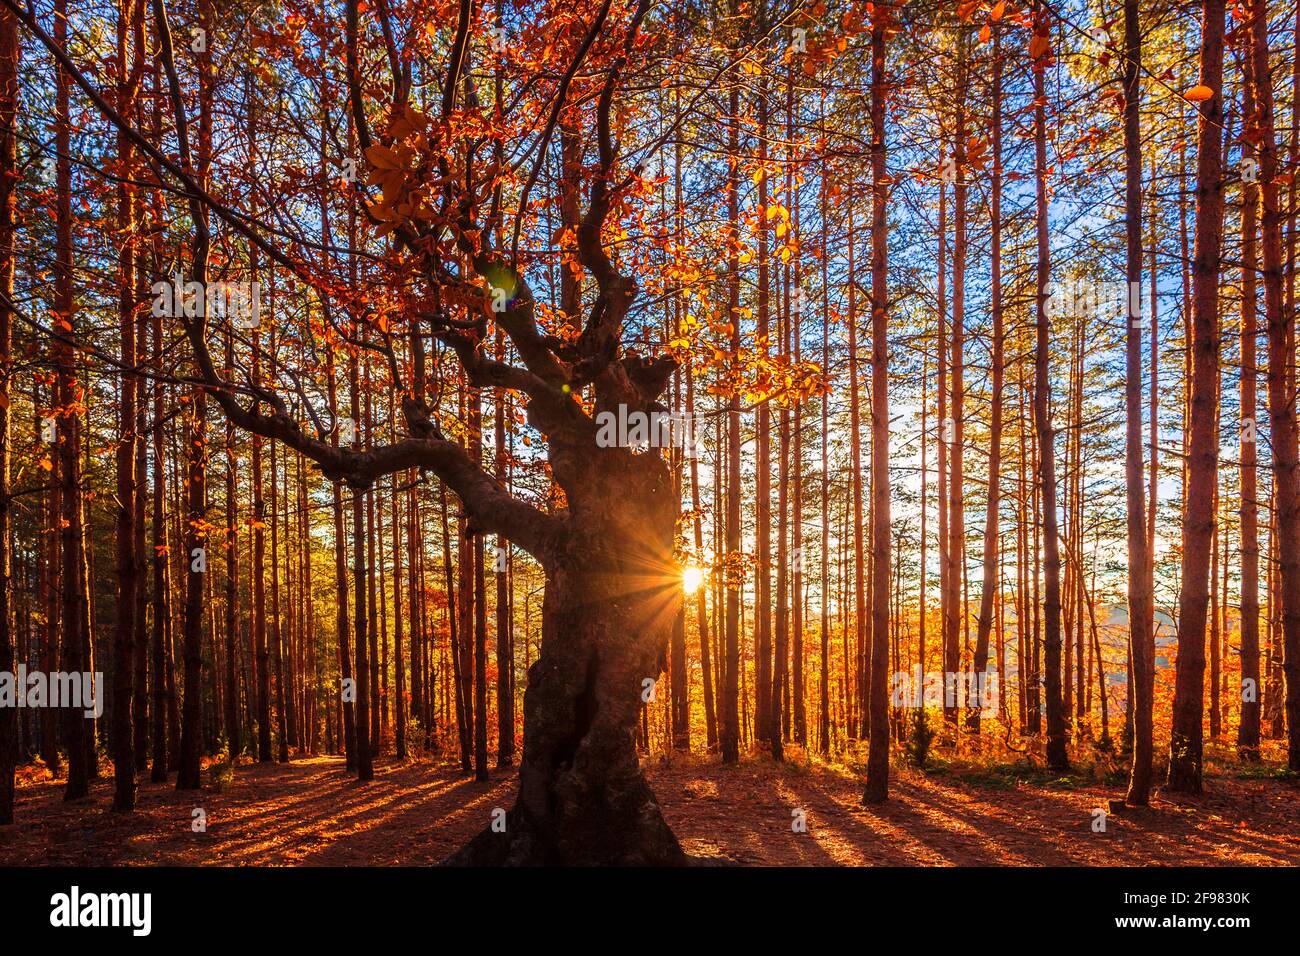 König des Waldes - Herbstlicher Laubbaum in Nadelforen Stockfoto